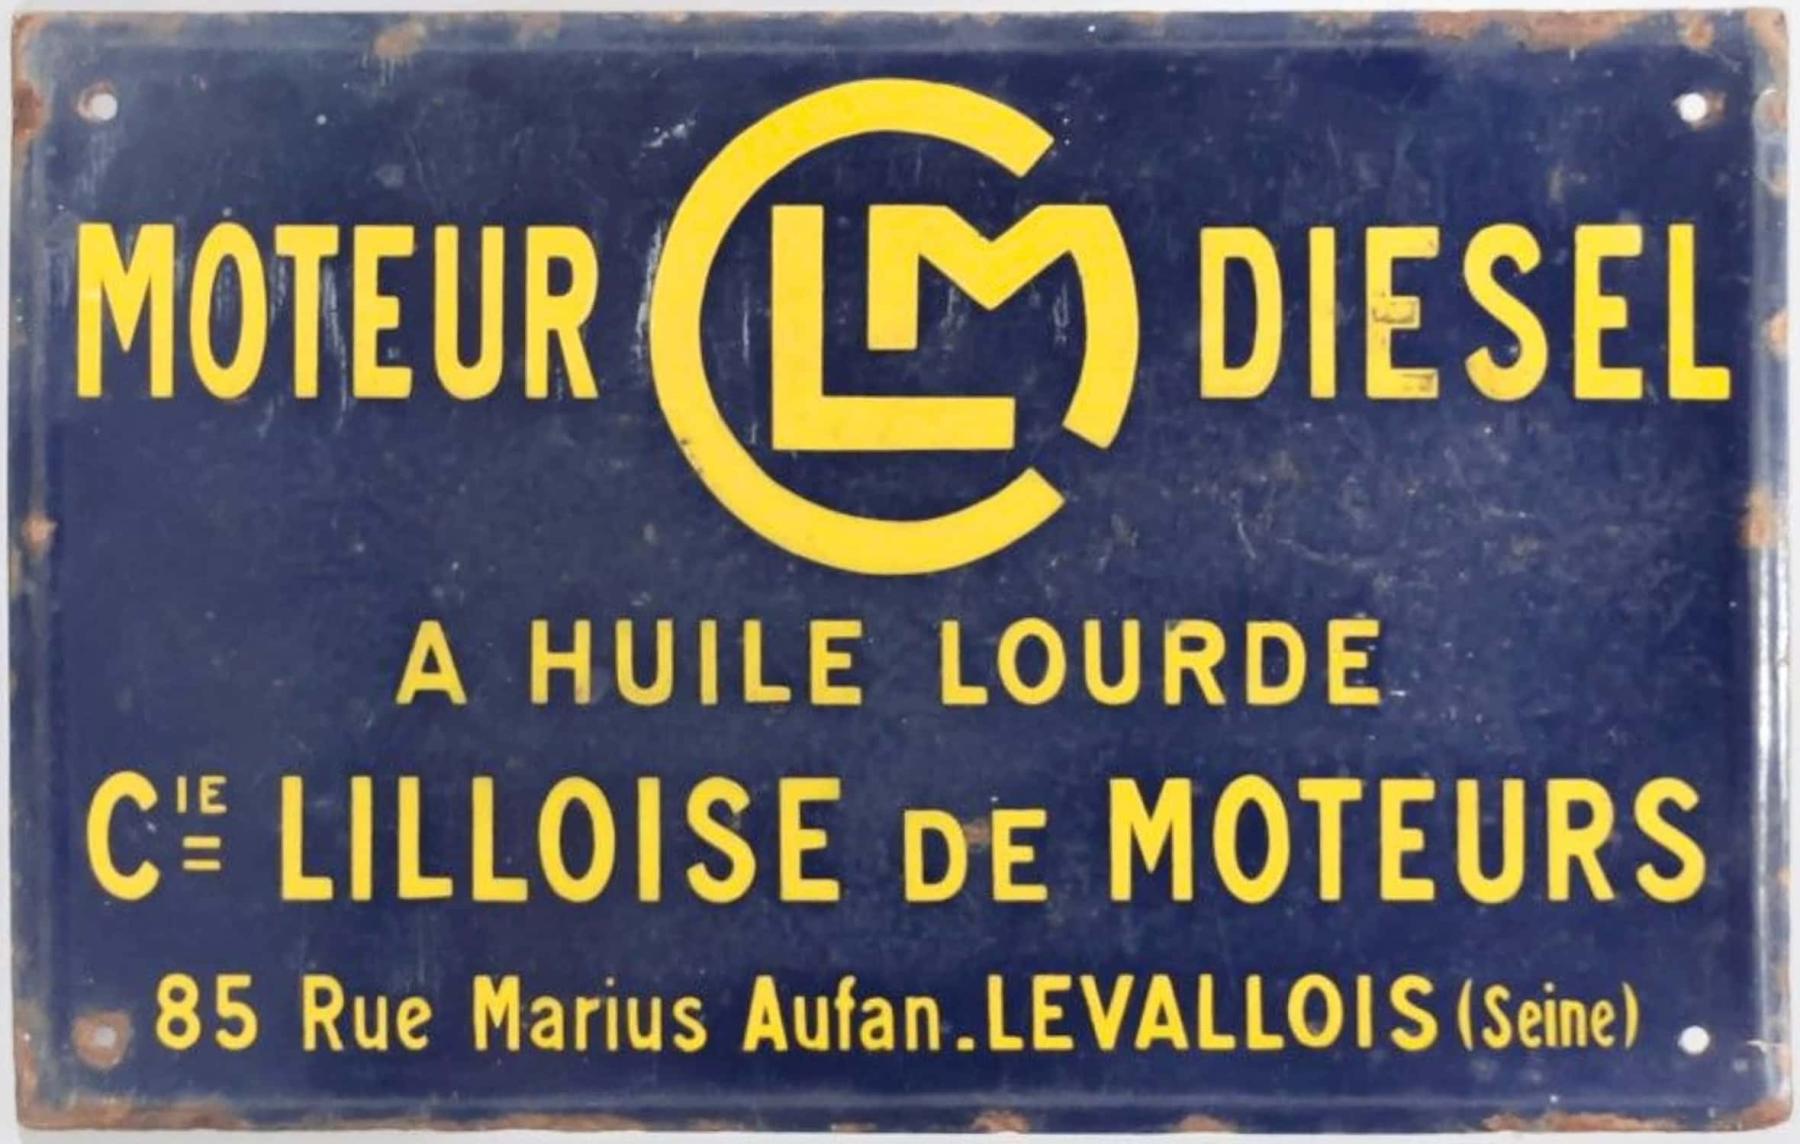 Ligne Maginot - Compagnie Lilloise des Moteurs (CLM) - Plaque publicitaire CLM